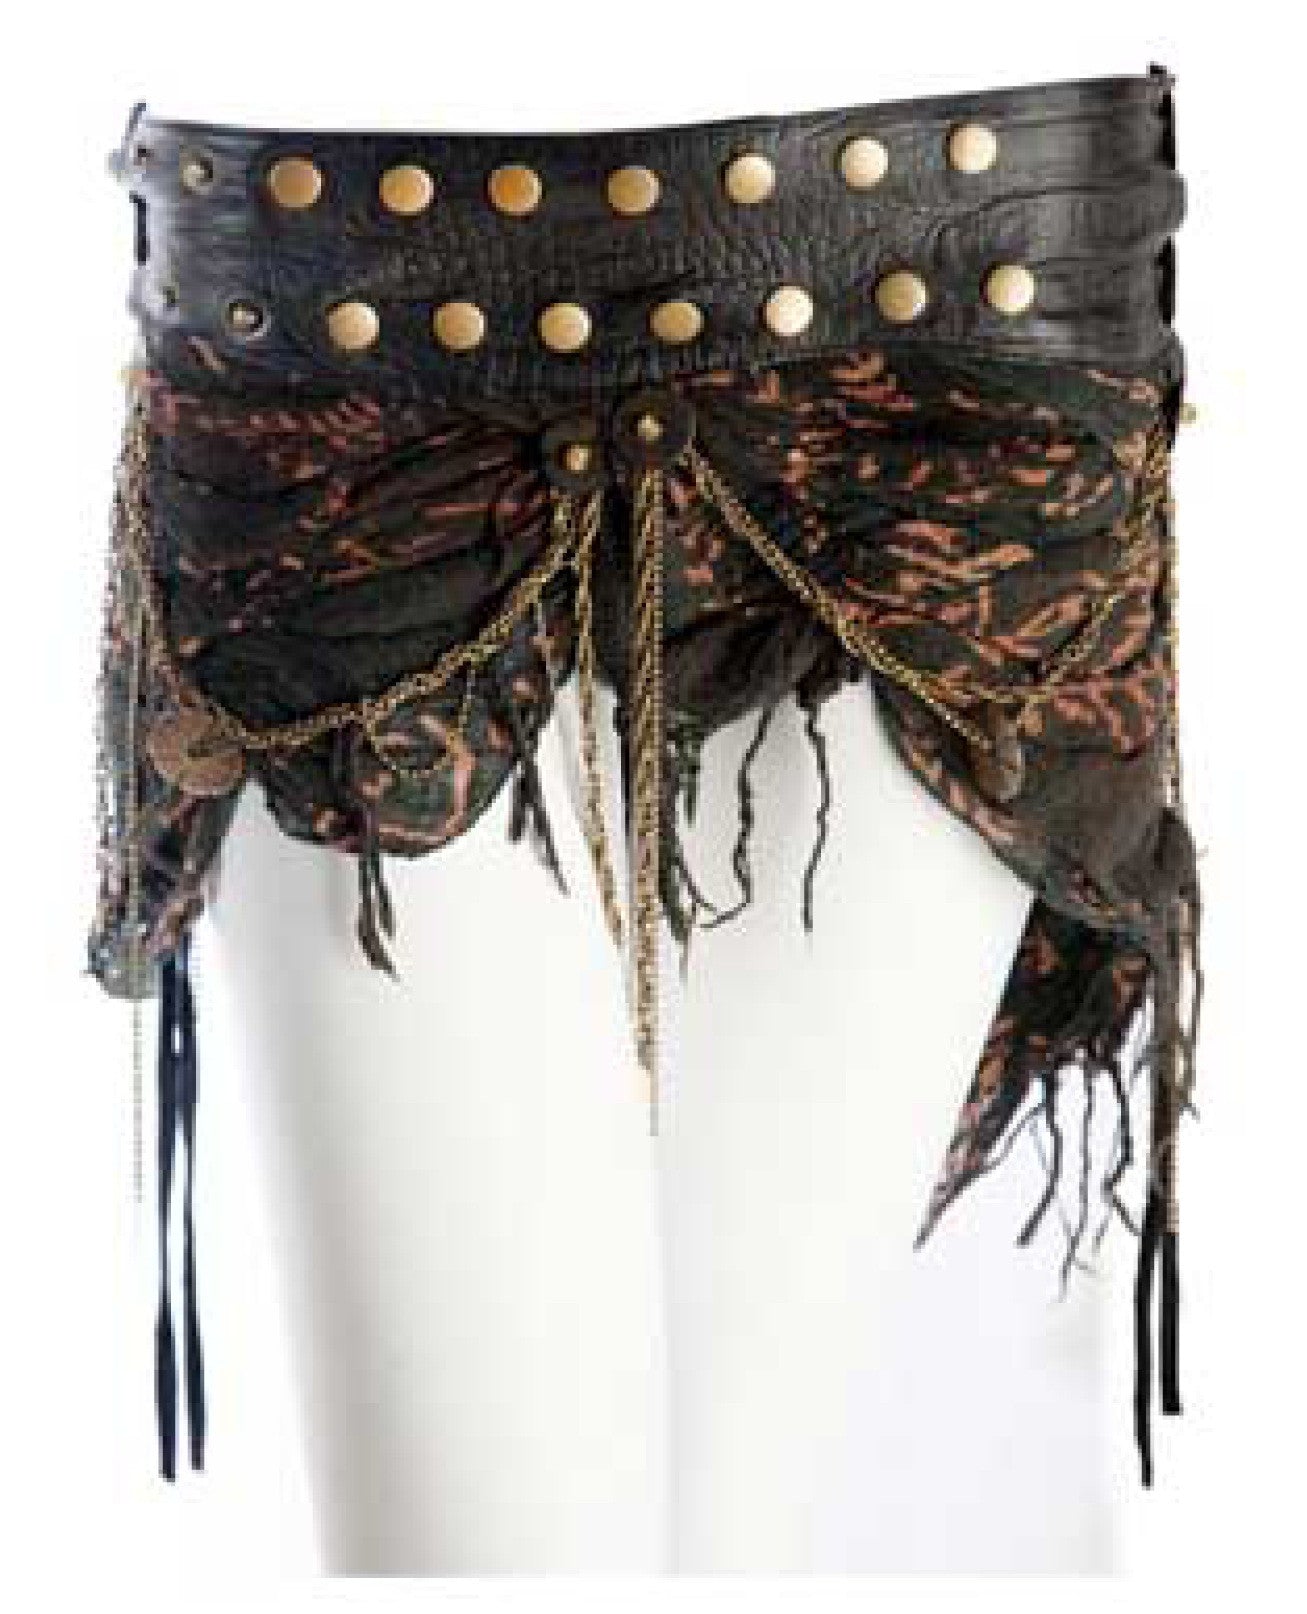 Urban Gypsy Chain Skirt